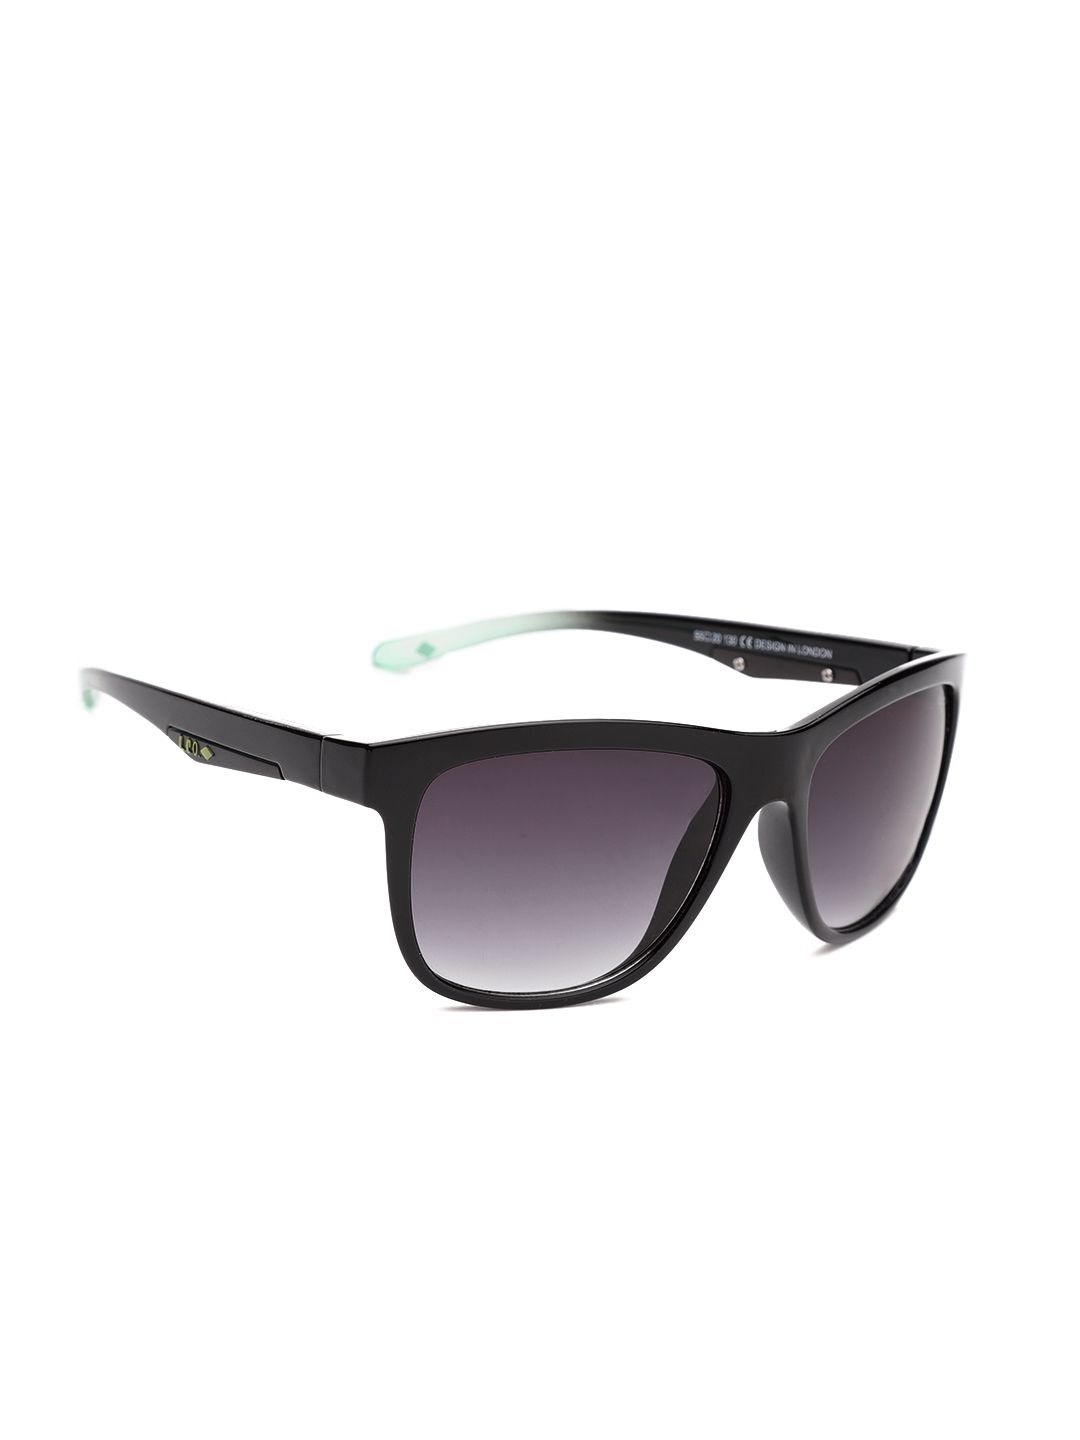 Lee Cooper Unisex Polarised Square Sunglasses LC9059 FOB Price in India